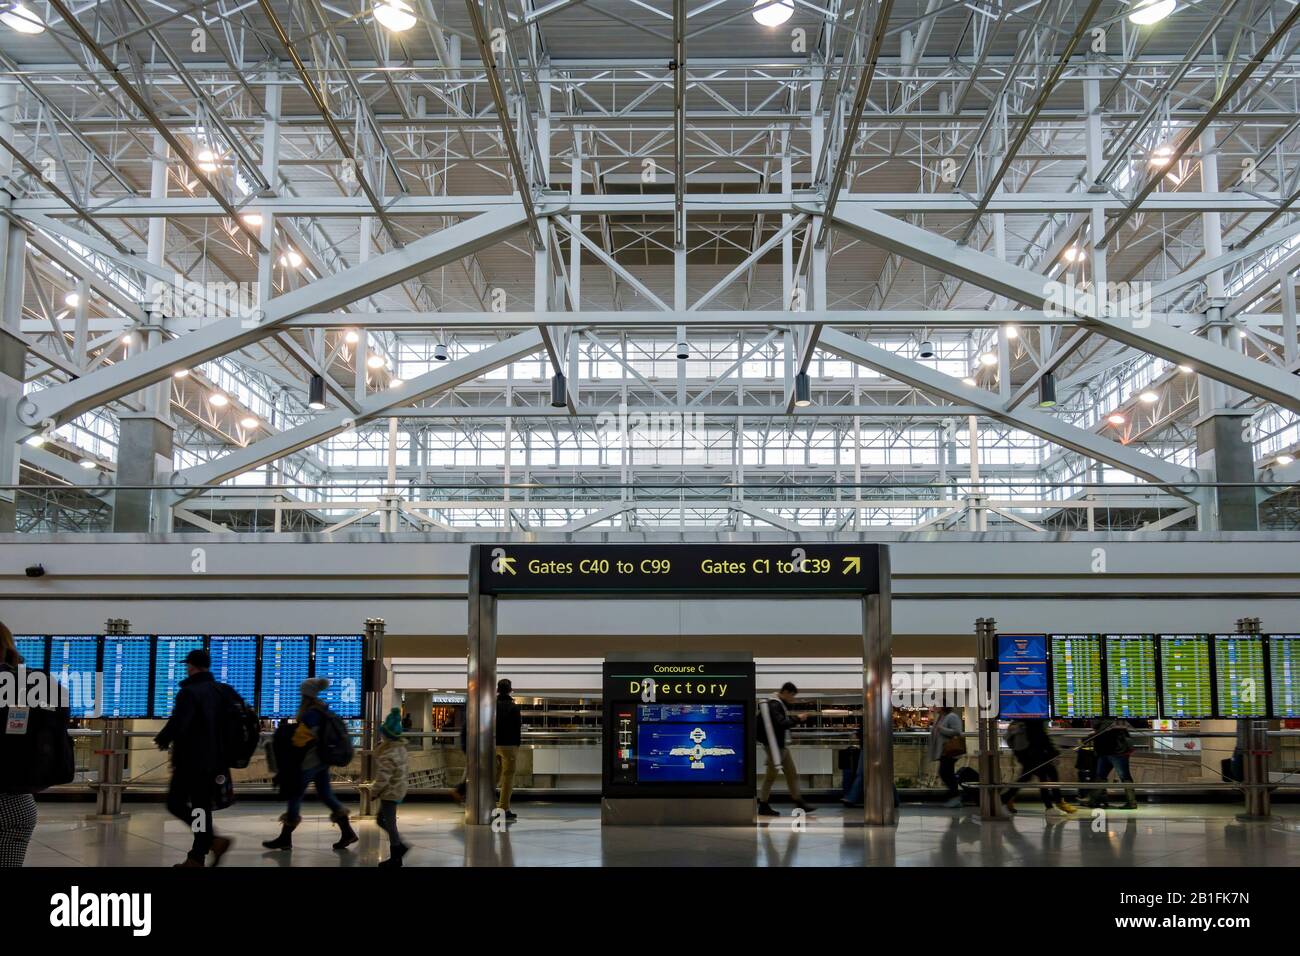 Denver, FEB 12: Interior view of the Denver International Airport on FEB 12, 2020 at Denver, Colorado Stock Photo